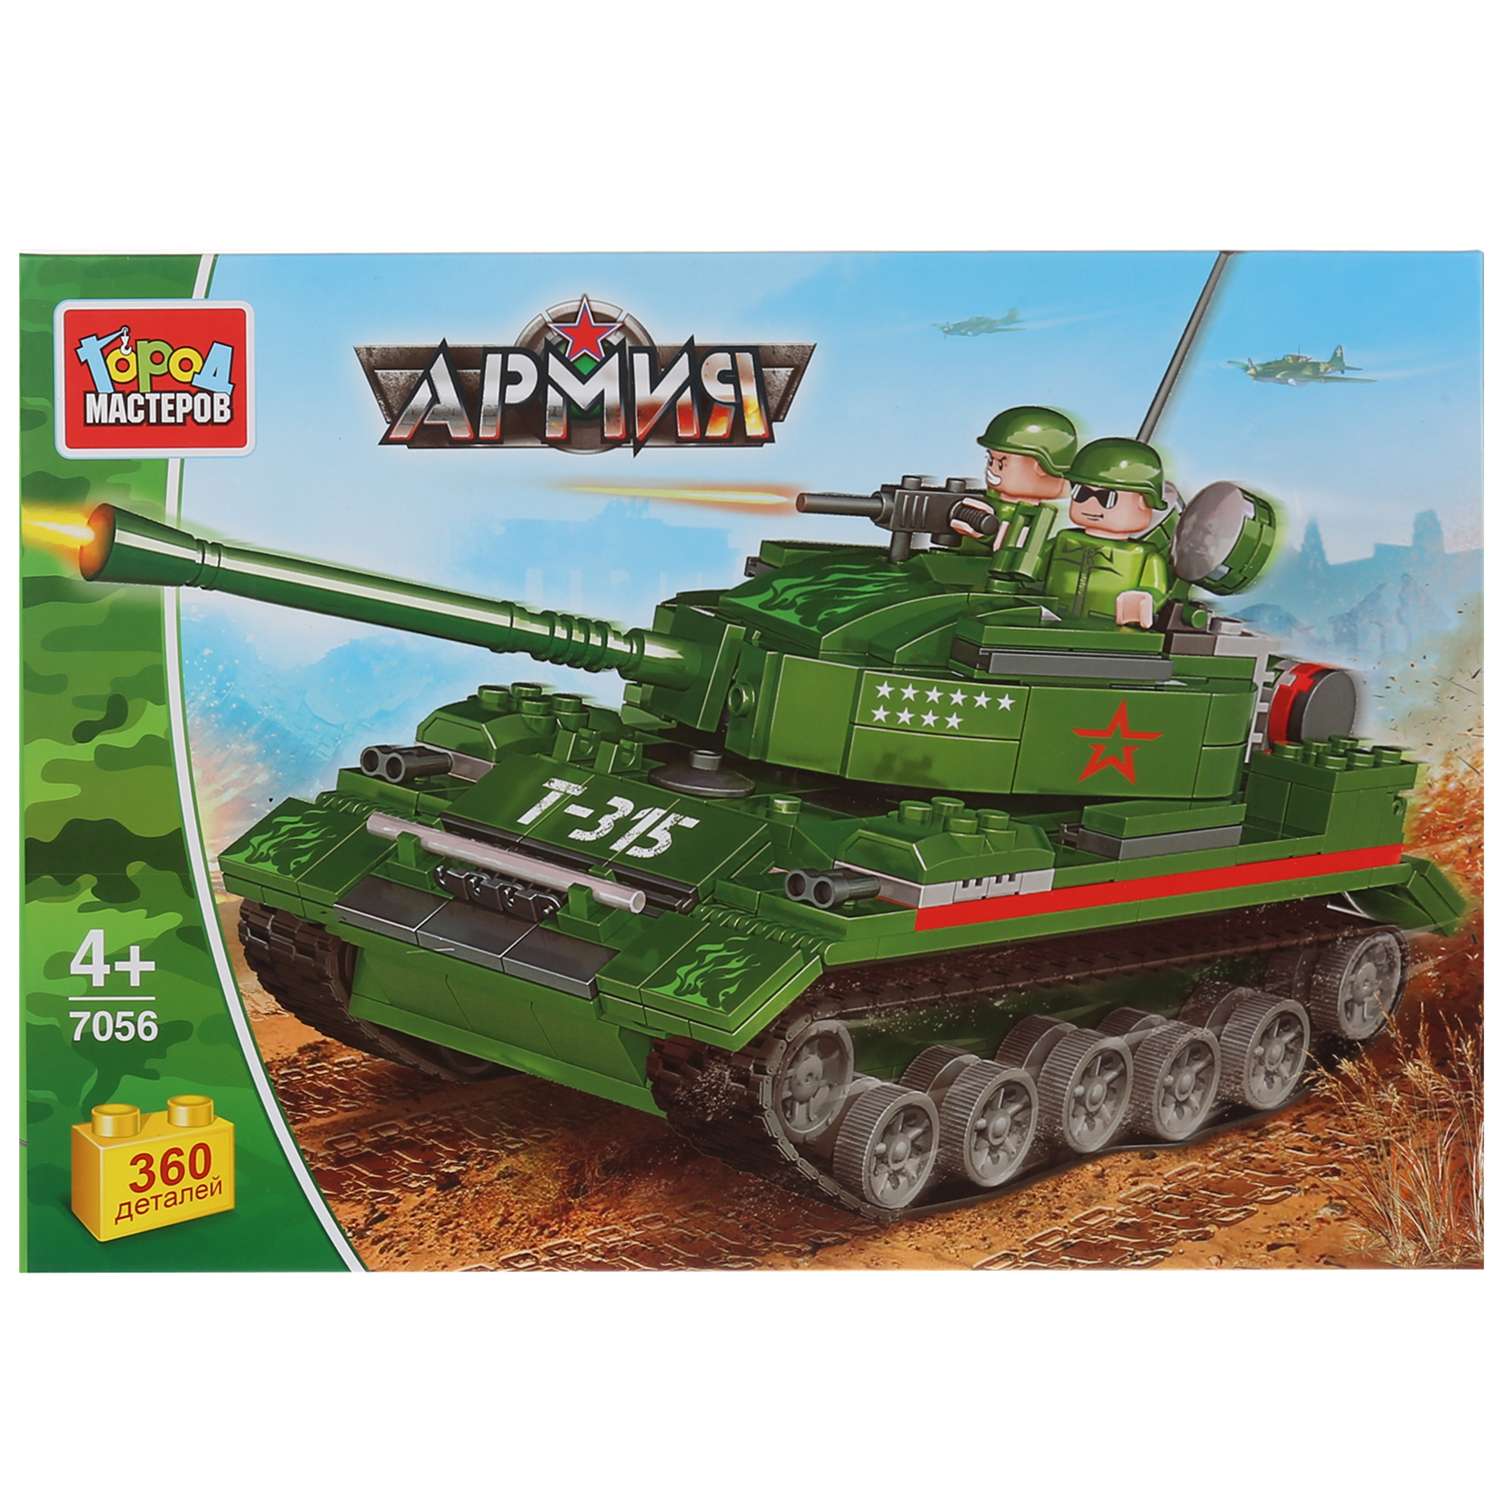 Конструктор ГОРОД МАСТЕРОВ Армия: танк с фигурками 276448 - фото 1